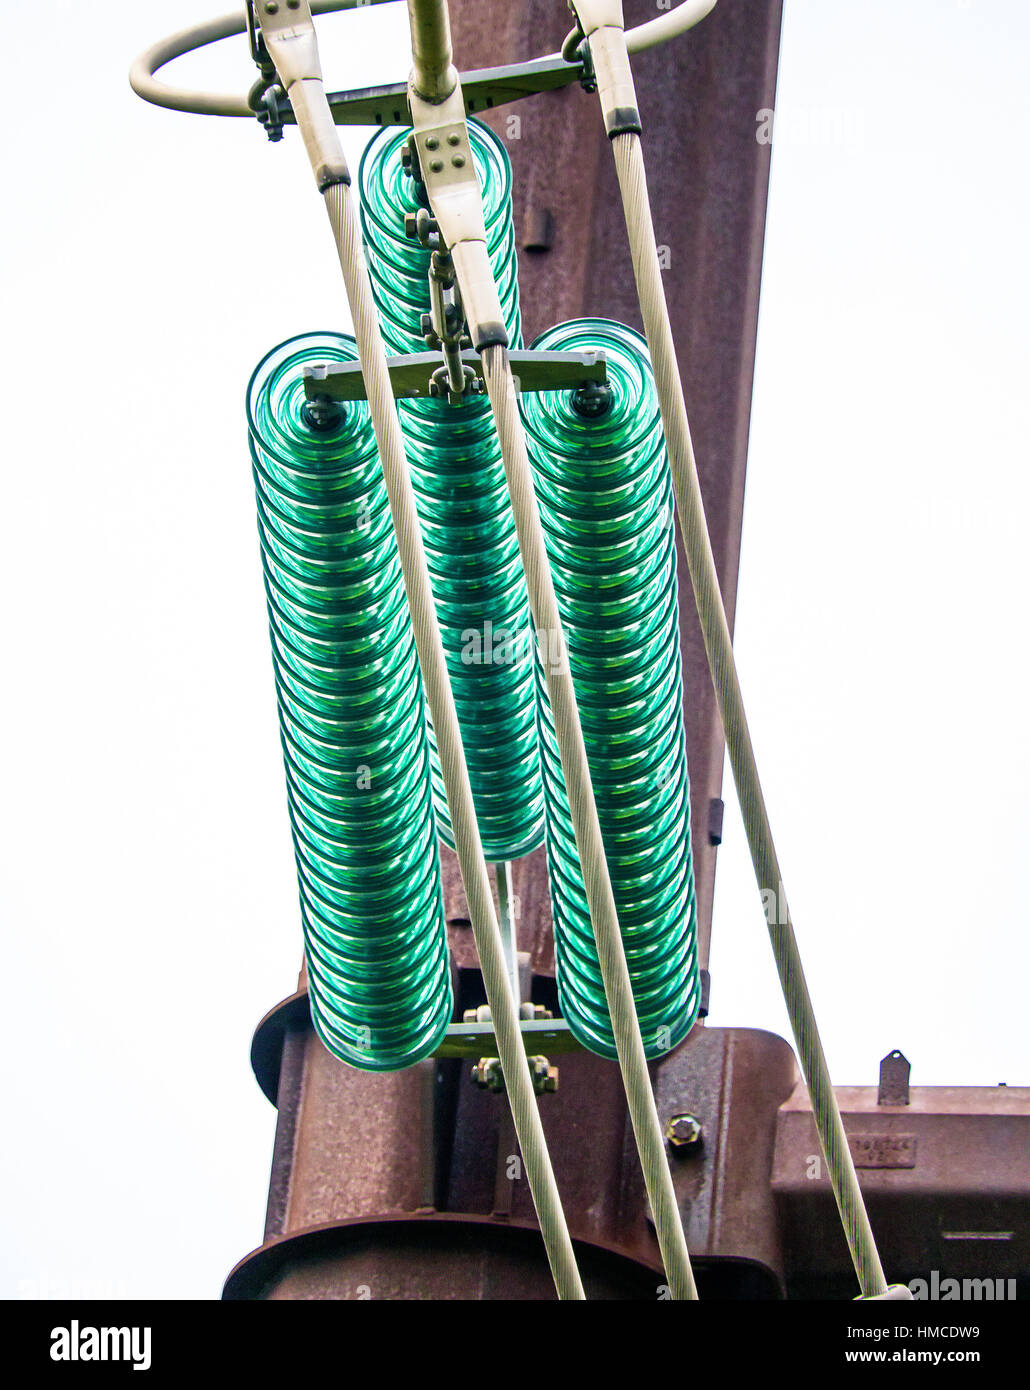 Closeup of high power line aqua colored glass insulators. Stock Photo